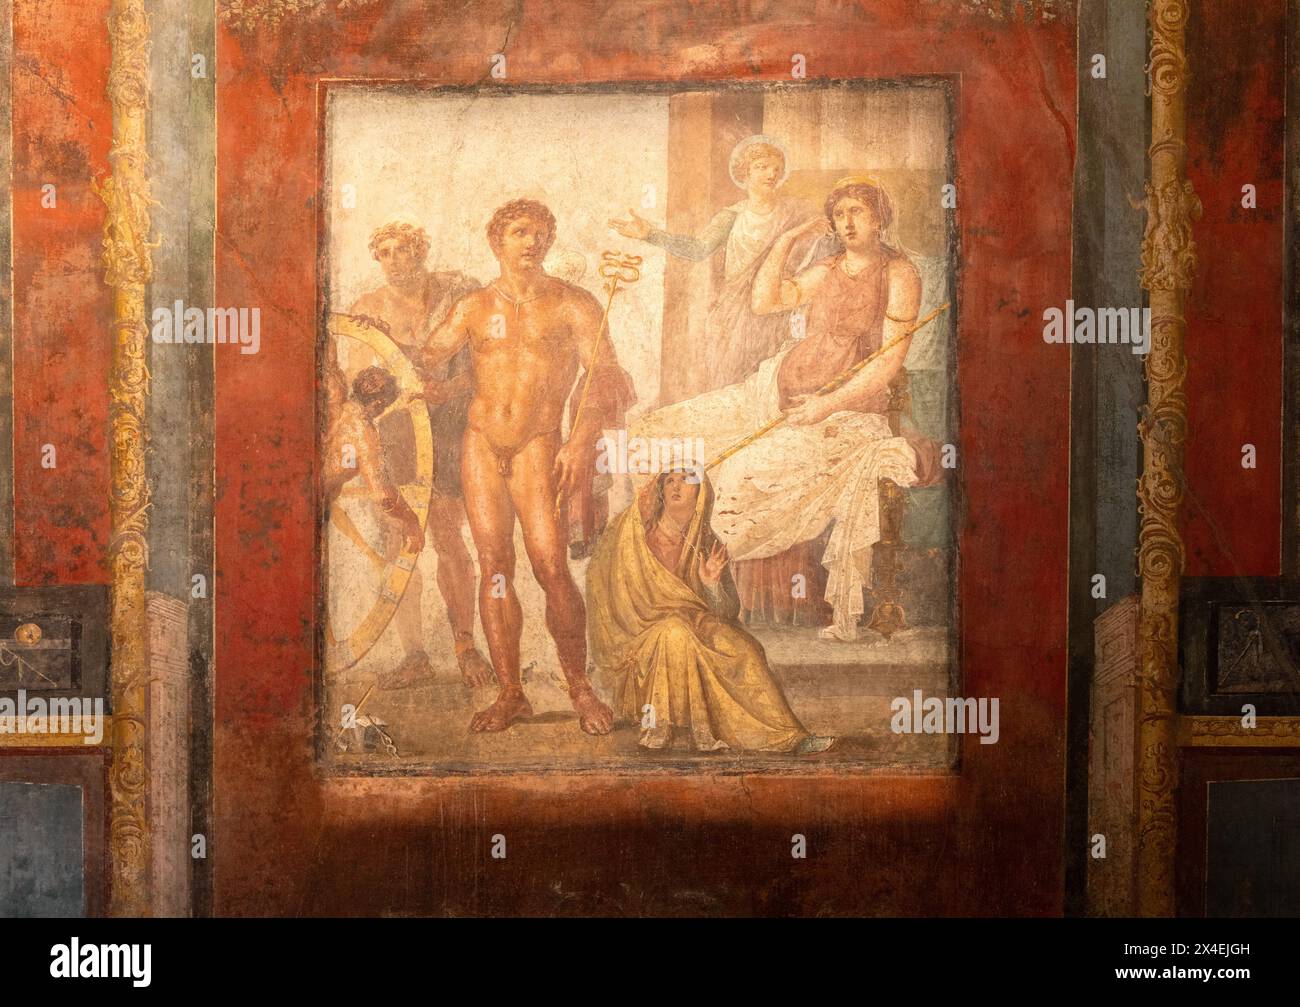 Fresque de Pompéi ; 'la punition d'Ixion', dans la Maison des Vettii ; peinture murale romaine antique du 1er siècle av. J.-C., civilisation romaine, Italie Banque D'Images